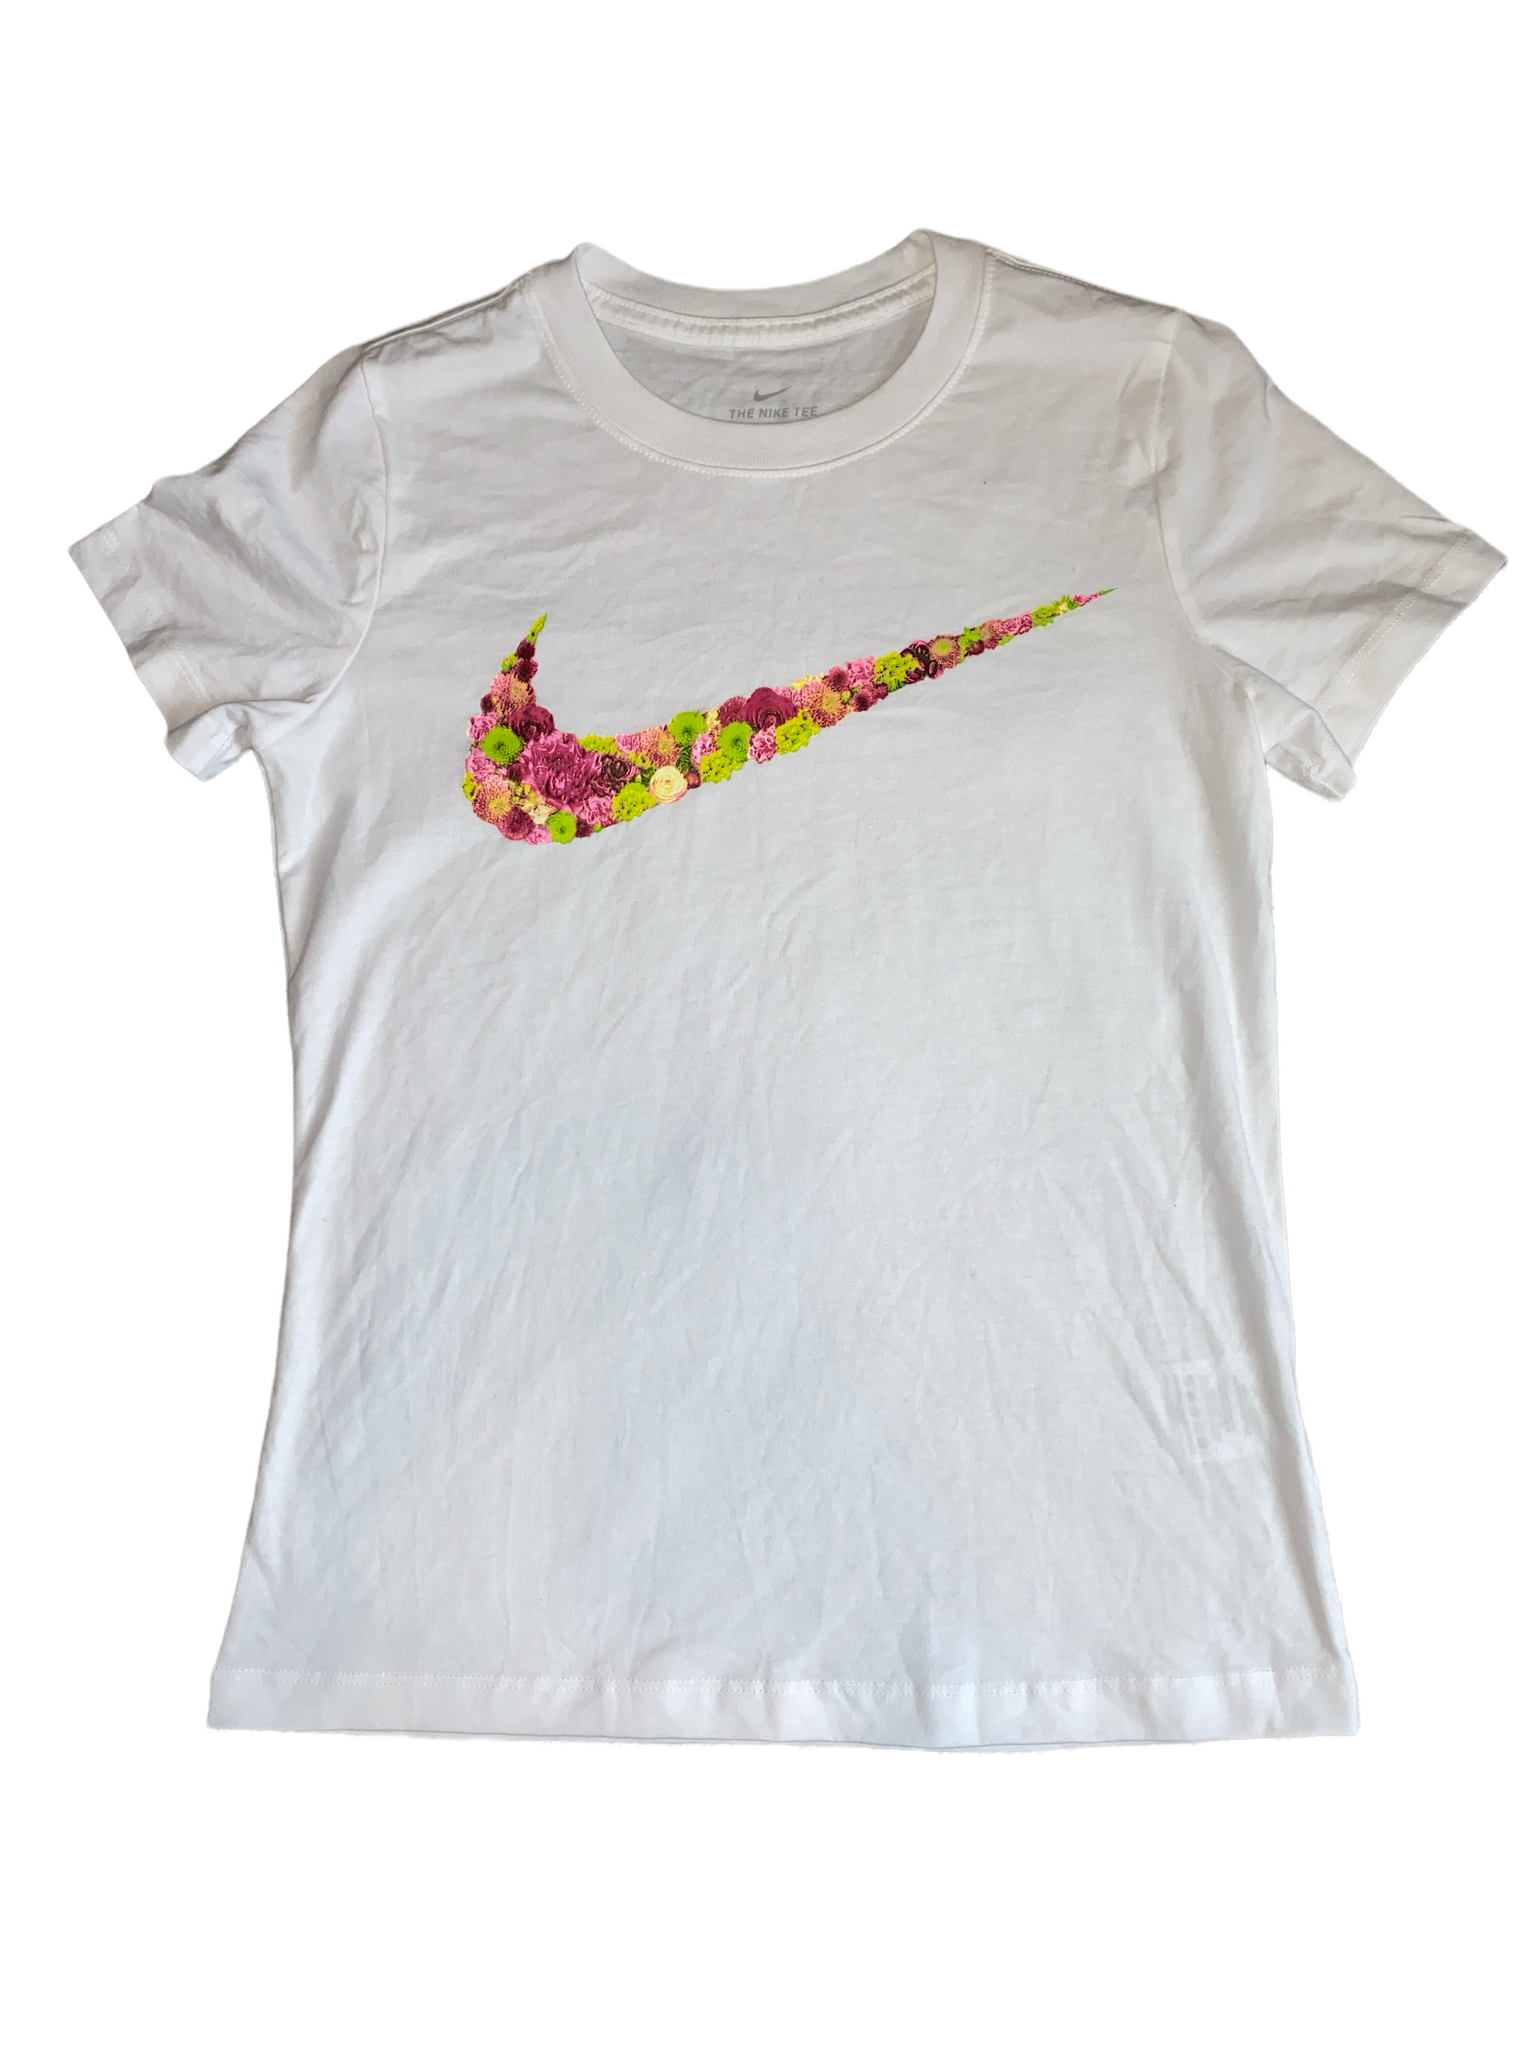 Nike women's floral Swoosh logo tee – Makenna's